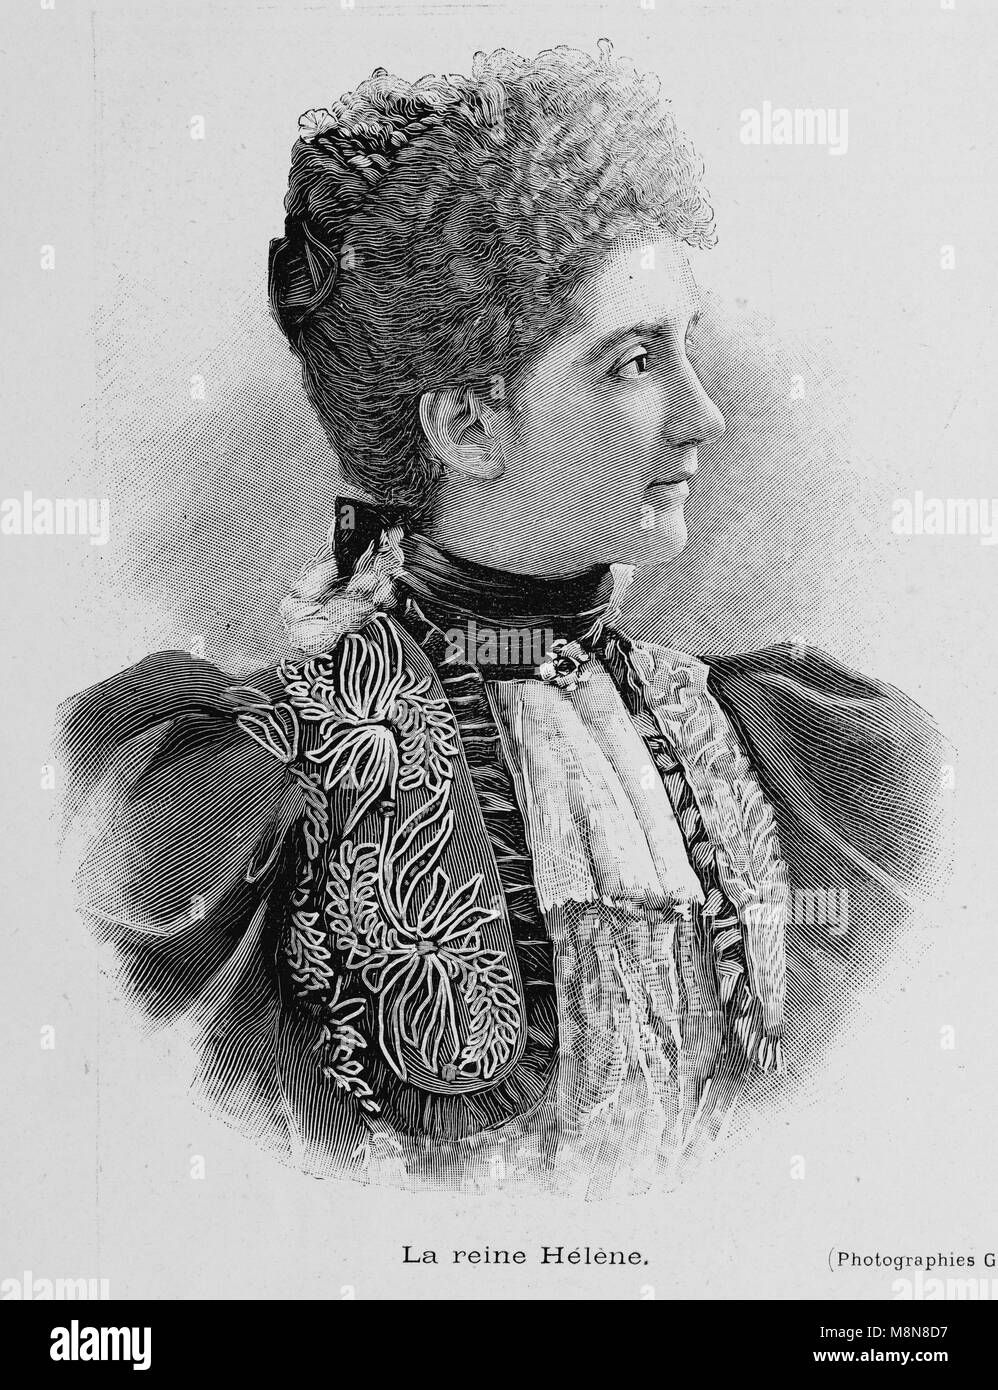 Reine Elena du Monténégro, l'épouse du roi Victor Emmanuel III d'Italie, Photo de l'hebdomadaire français journal l'illustration, 4 août 1900 Banque D'Images